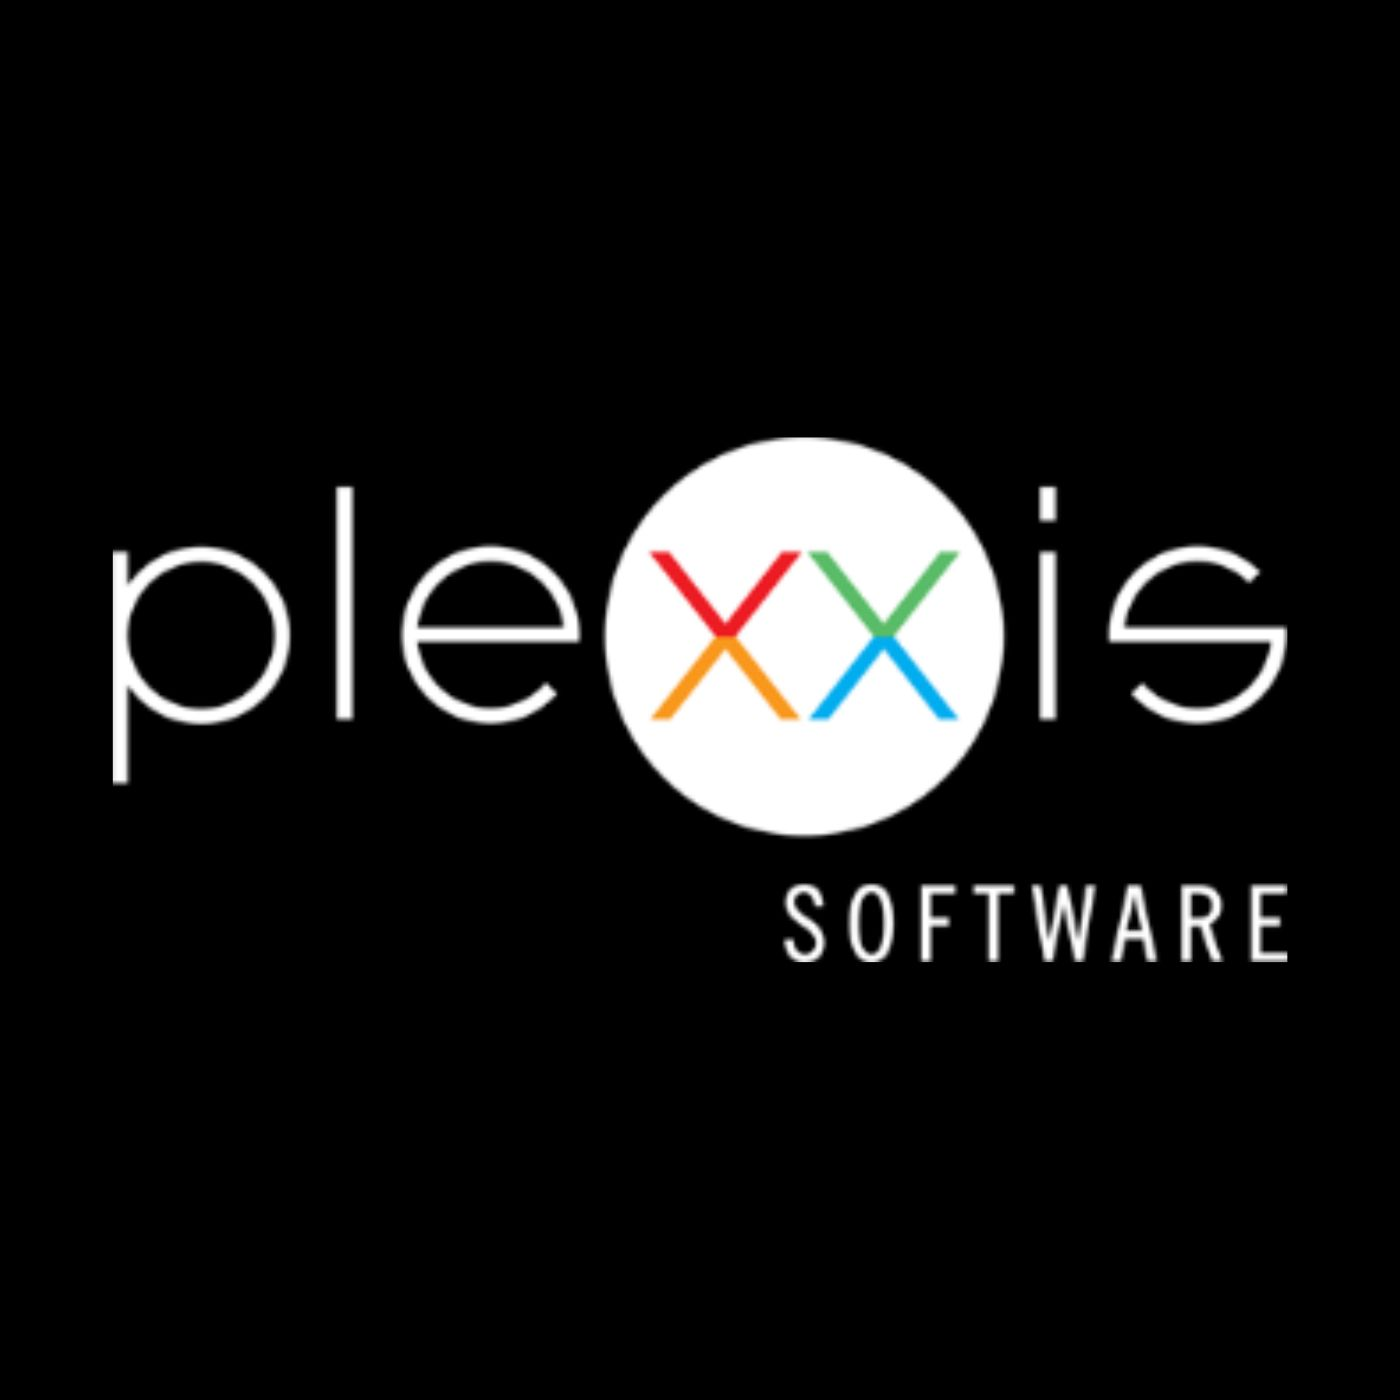 Plexxis Software'